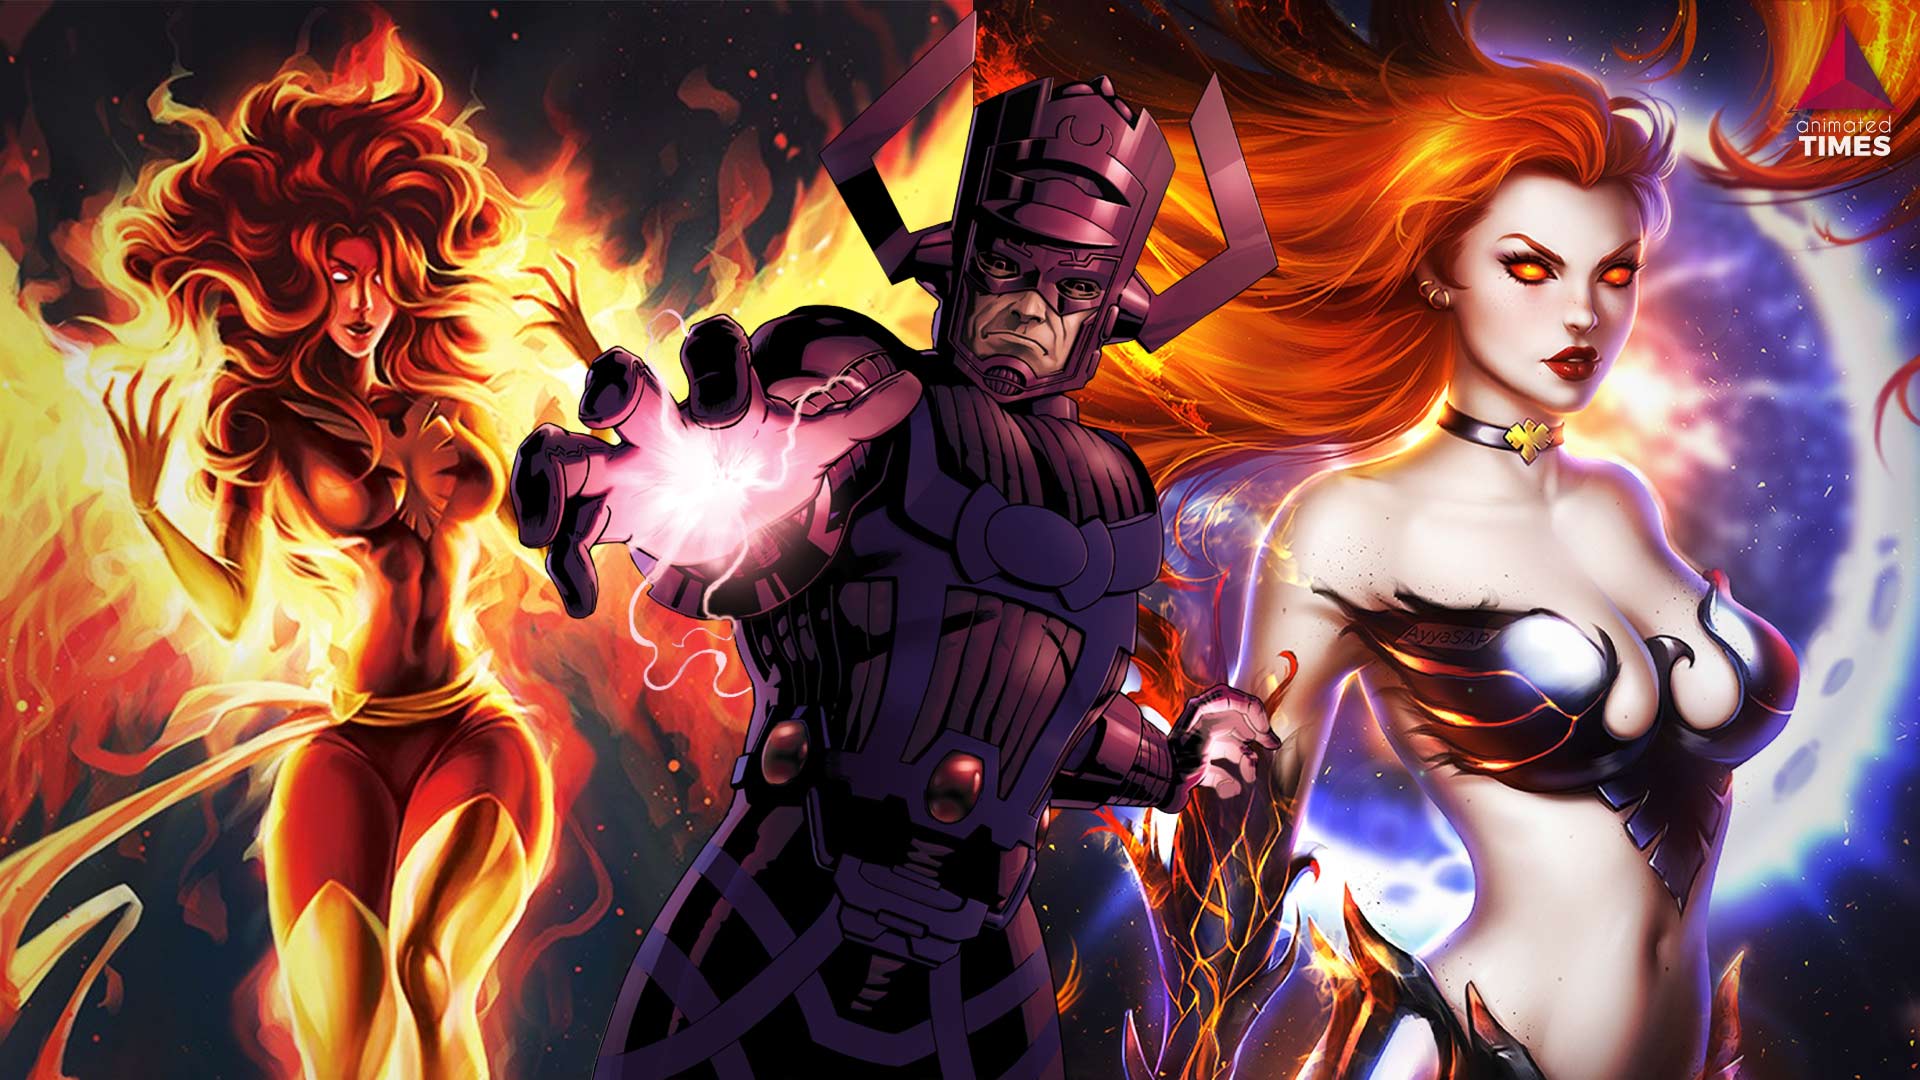 X Men 10 Dark Phoenix Fan Art Pics That Would Panic Even The Galactus